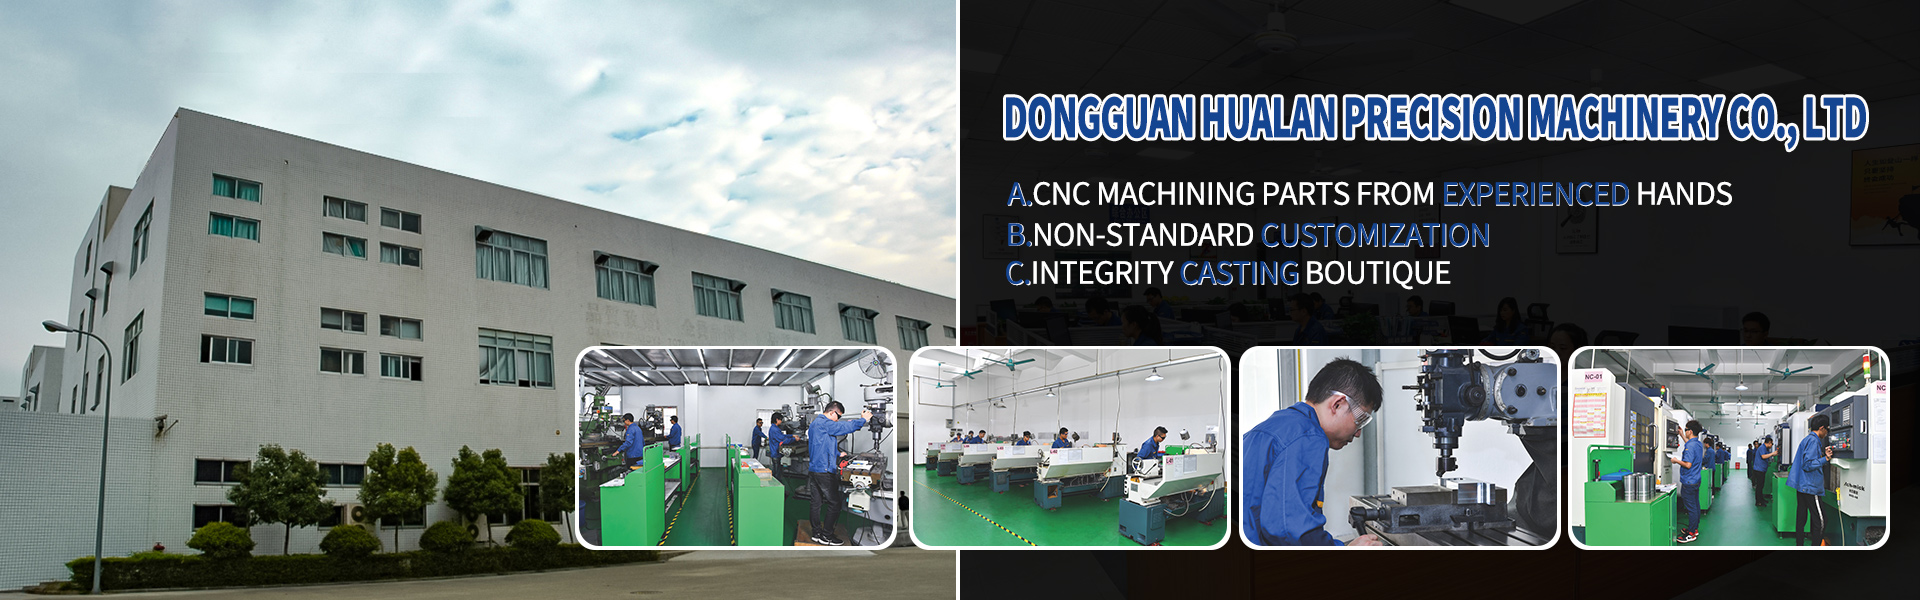 Peças de usinagem CNC, Turing e Milling, corte de linha,Dongguan Hualan Precision Machinery Co., LTD